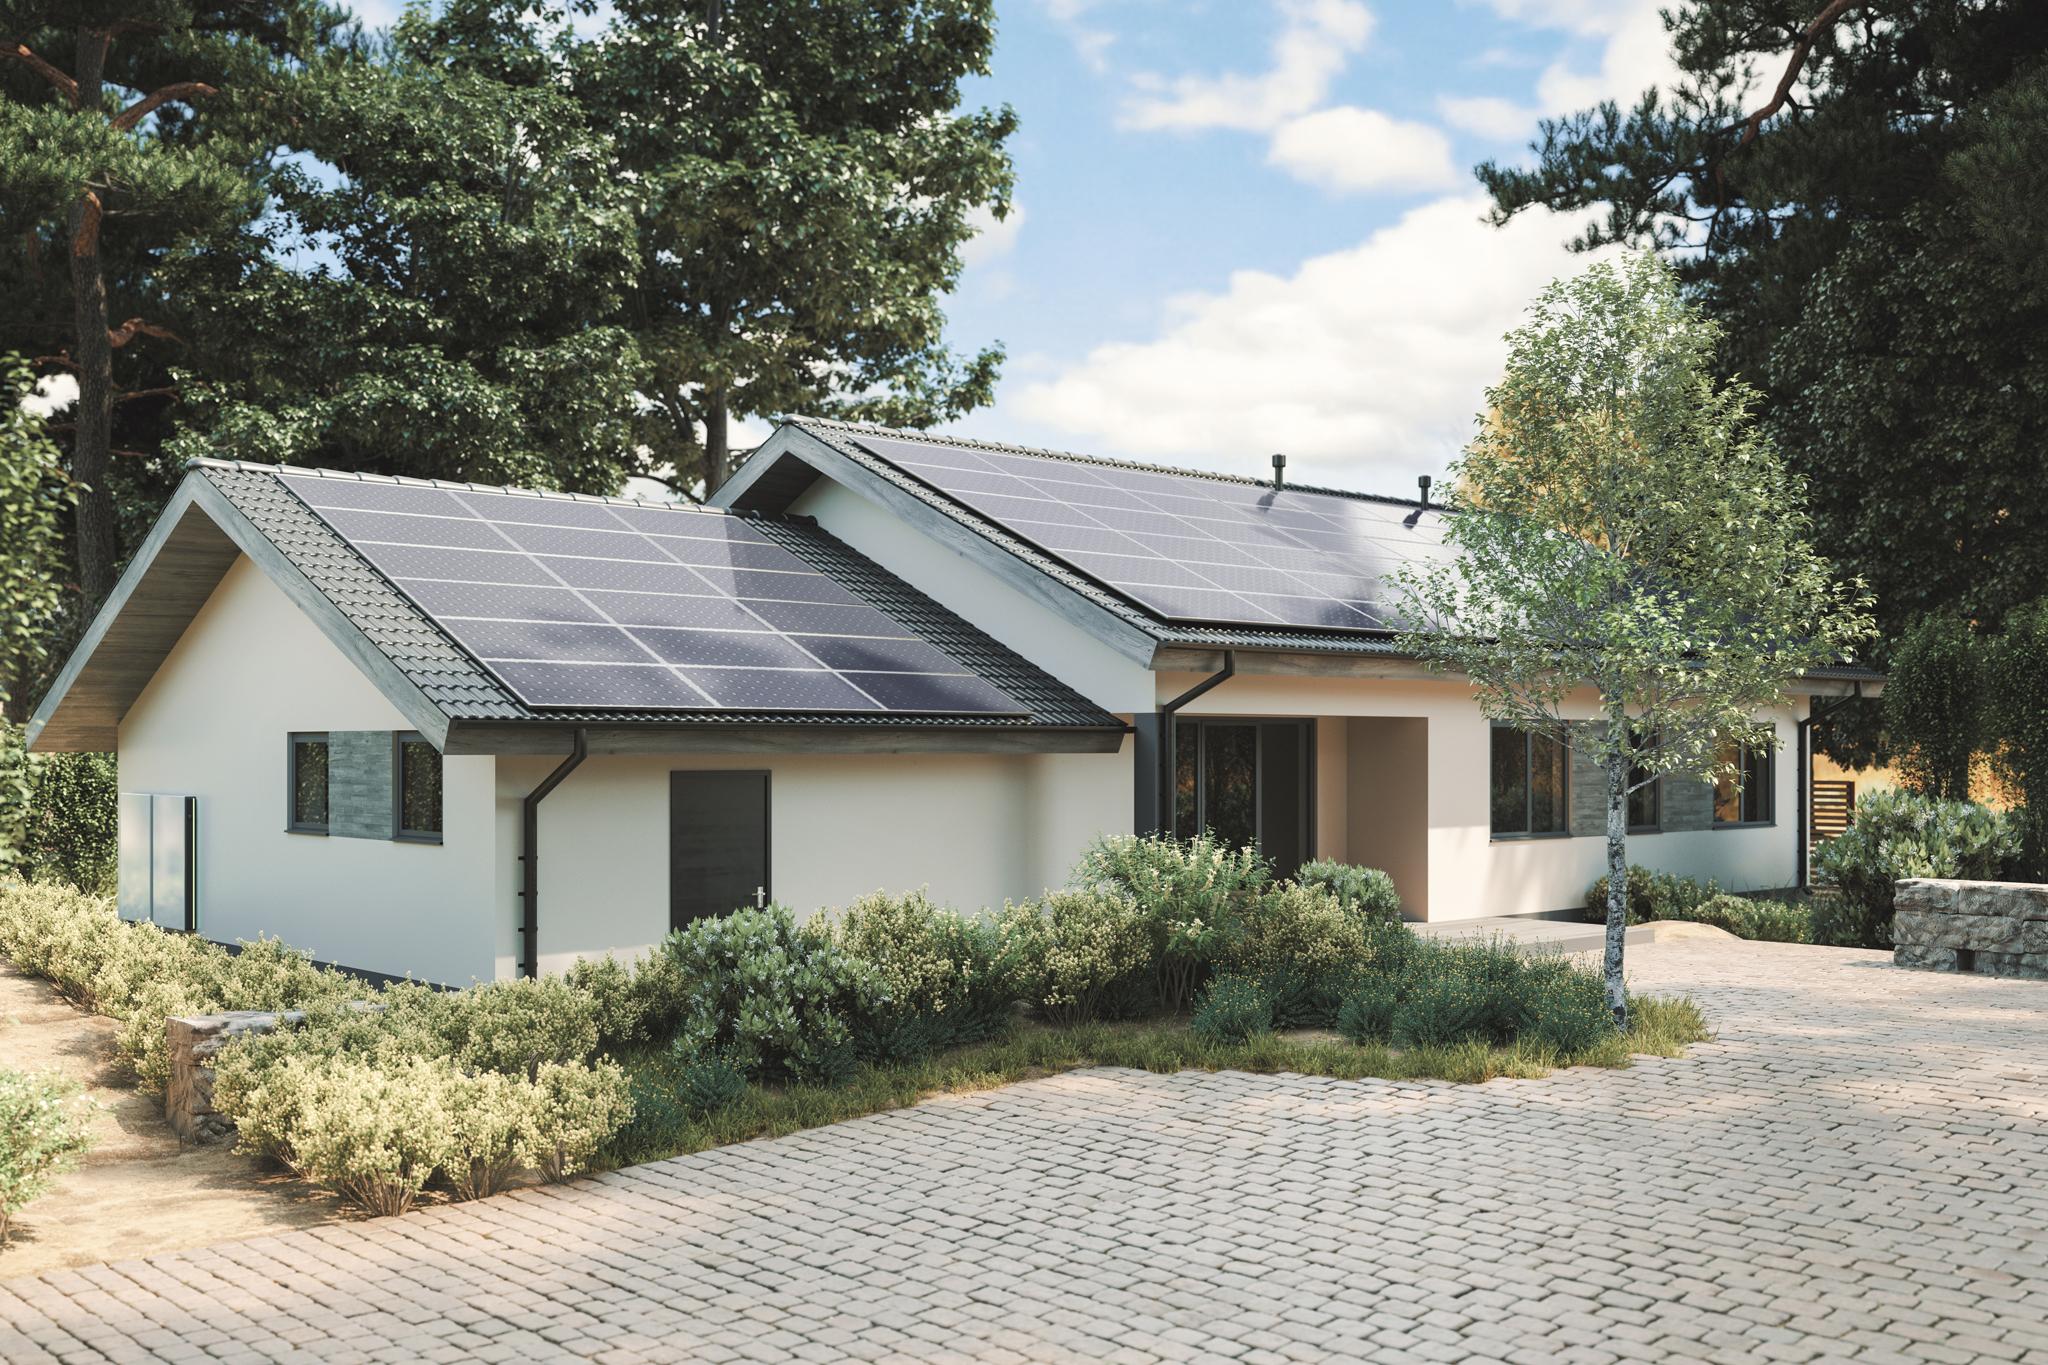 Einfamilienhaus mit PV-Anlage auf dem Dach - Unabhängigkeit durch Solaranlage?